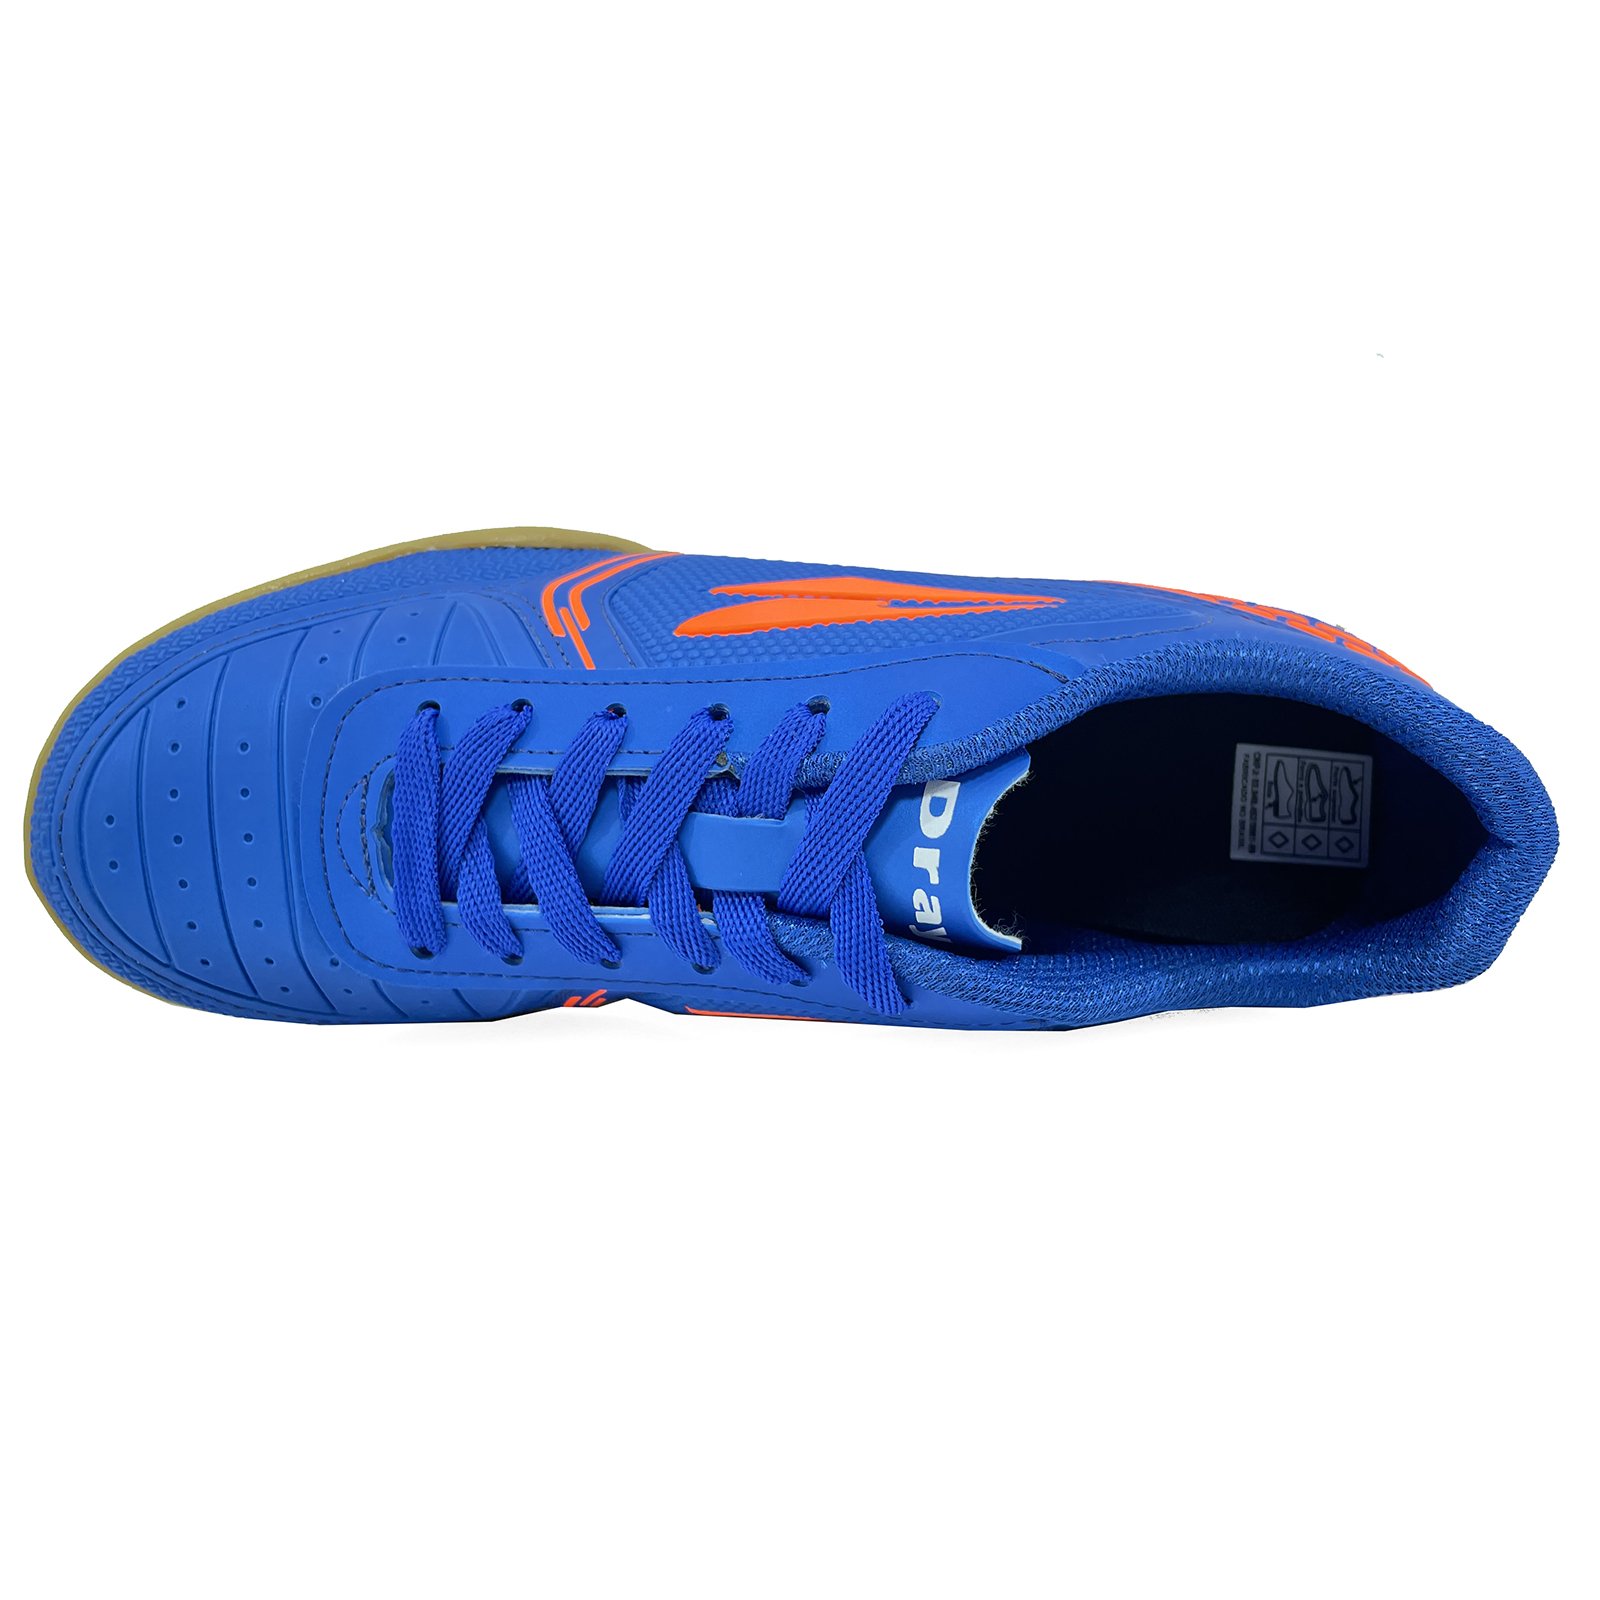 Chuteira Futsal Dray 806 Masculina - Azul e Laranja Azul 3